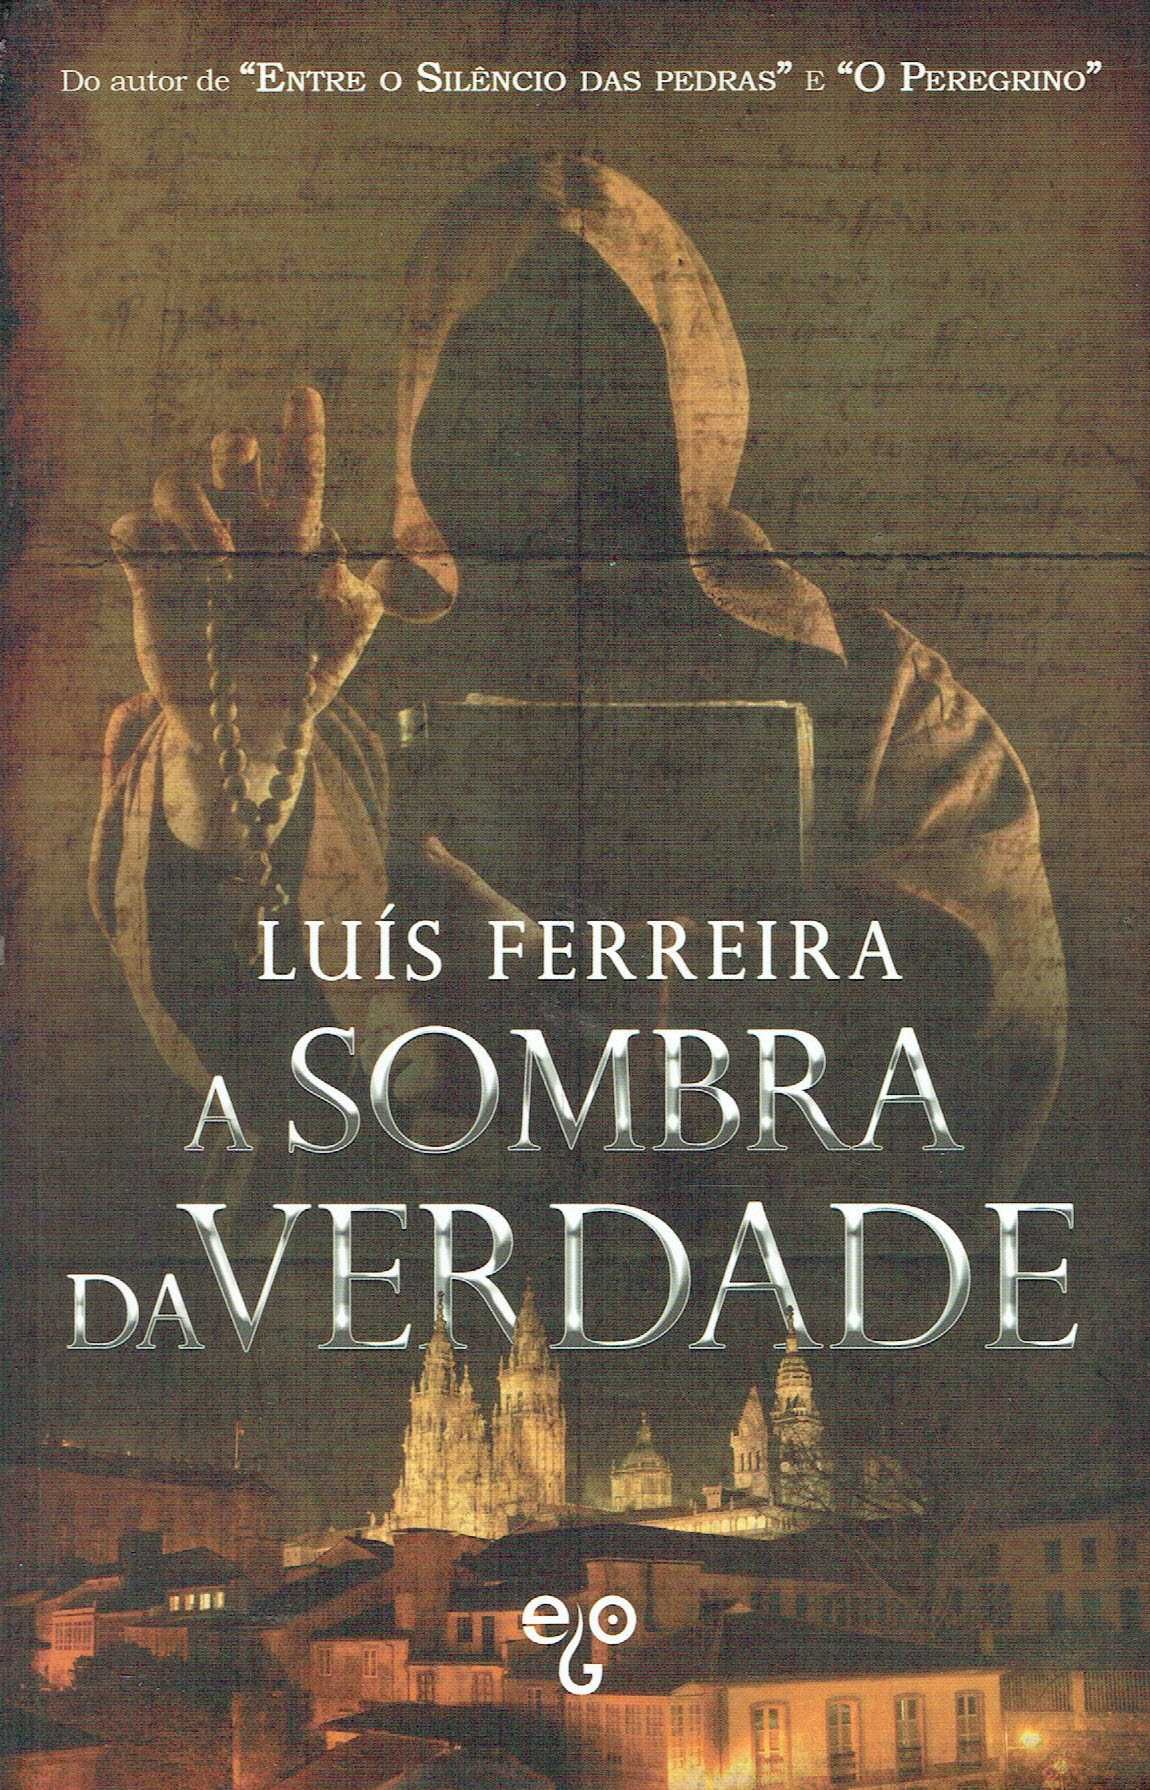 15164

A Sombra da Verdade
de Luís Ferreira